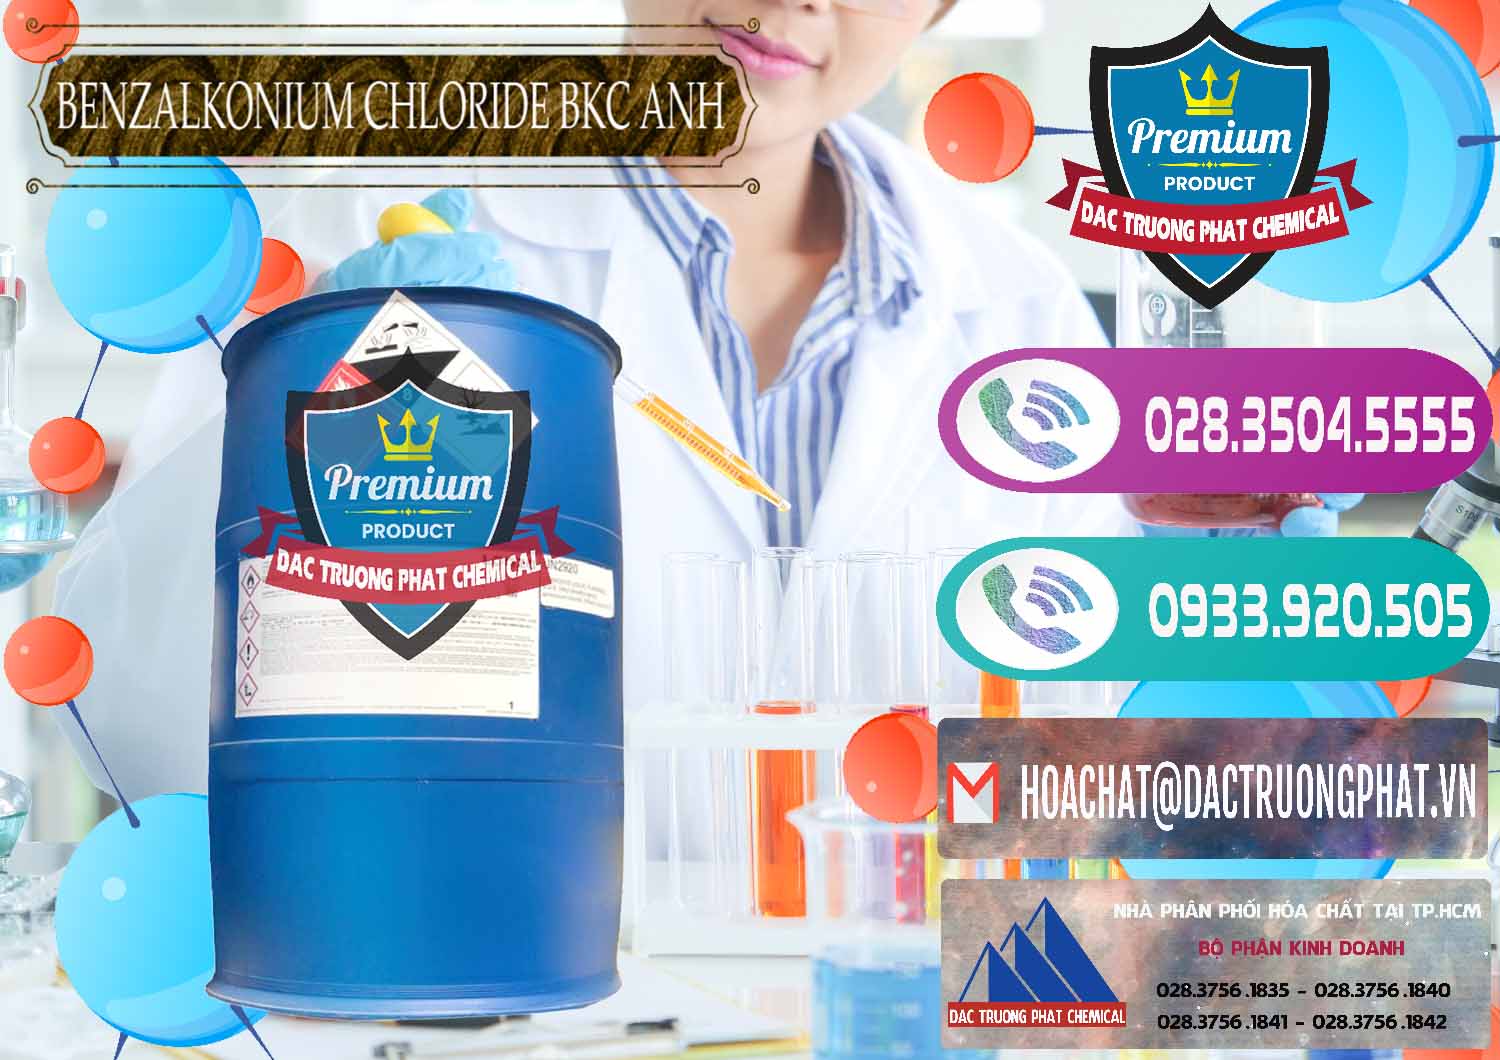 Chuyên cung ứng và bán BKC - Benzalkonium Chloride 80% Anh Quốc Uk Kingdoms - 0457 - Nơi cung ứng & phân phối hóa chất tại TP.HCM - hoachatxulynuoc.com